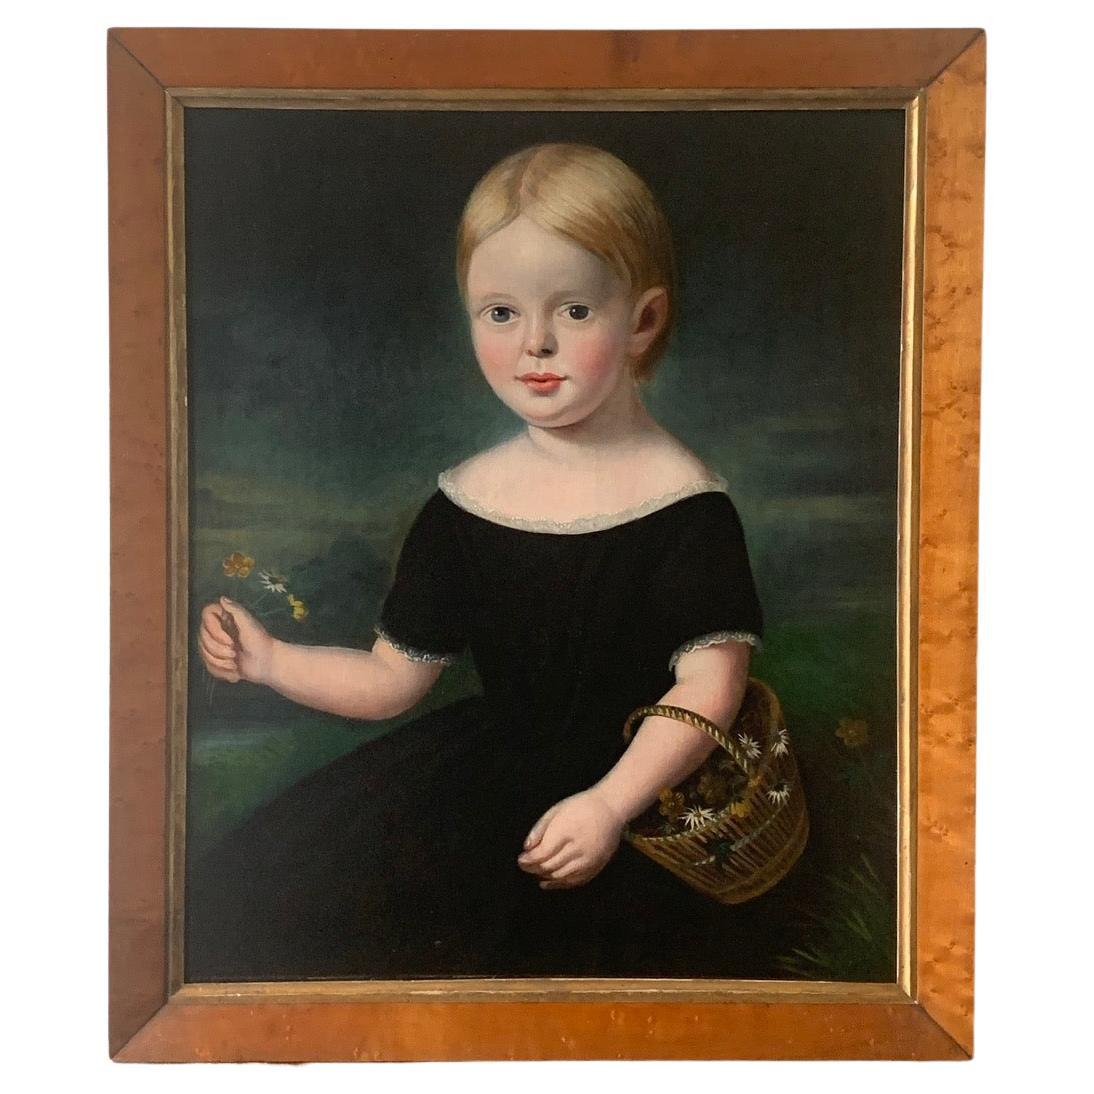 Volkskunst-Porträtgemälde eines jungen Mädchens aus dem 19. Jahrhundert